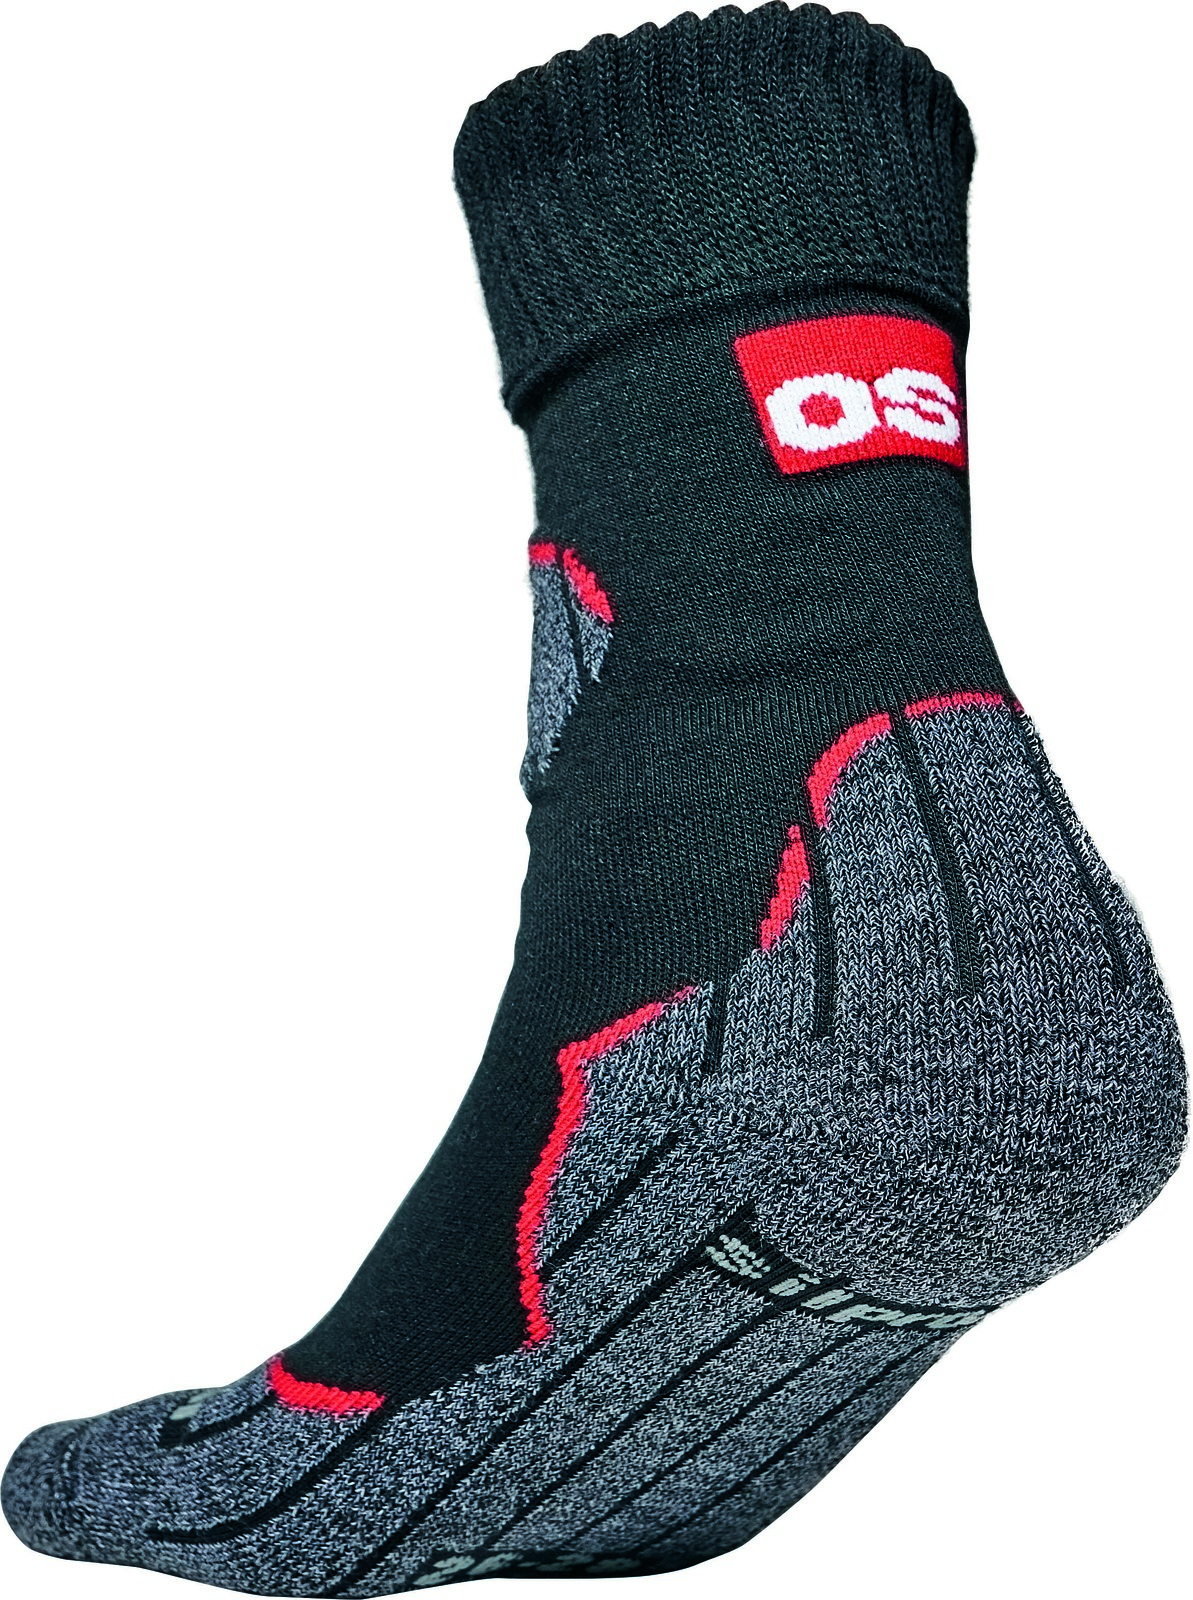 Funkčné ponožky Holtum s merinom - veľkosť: 39-40, farba: čierna